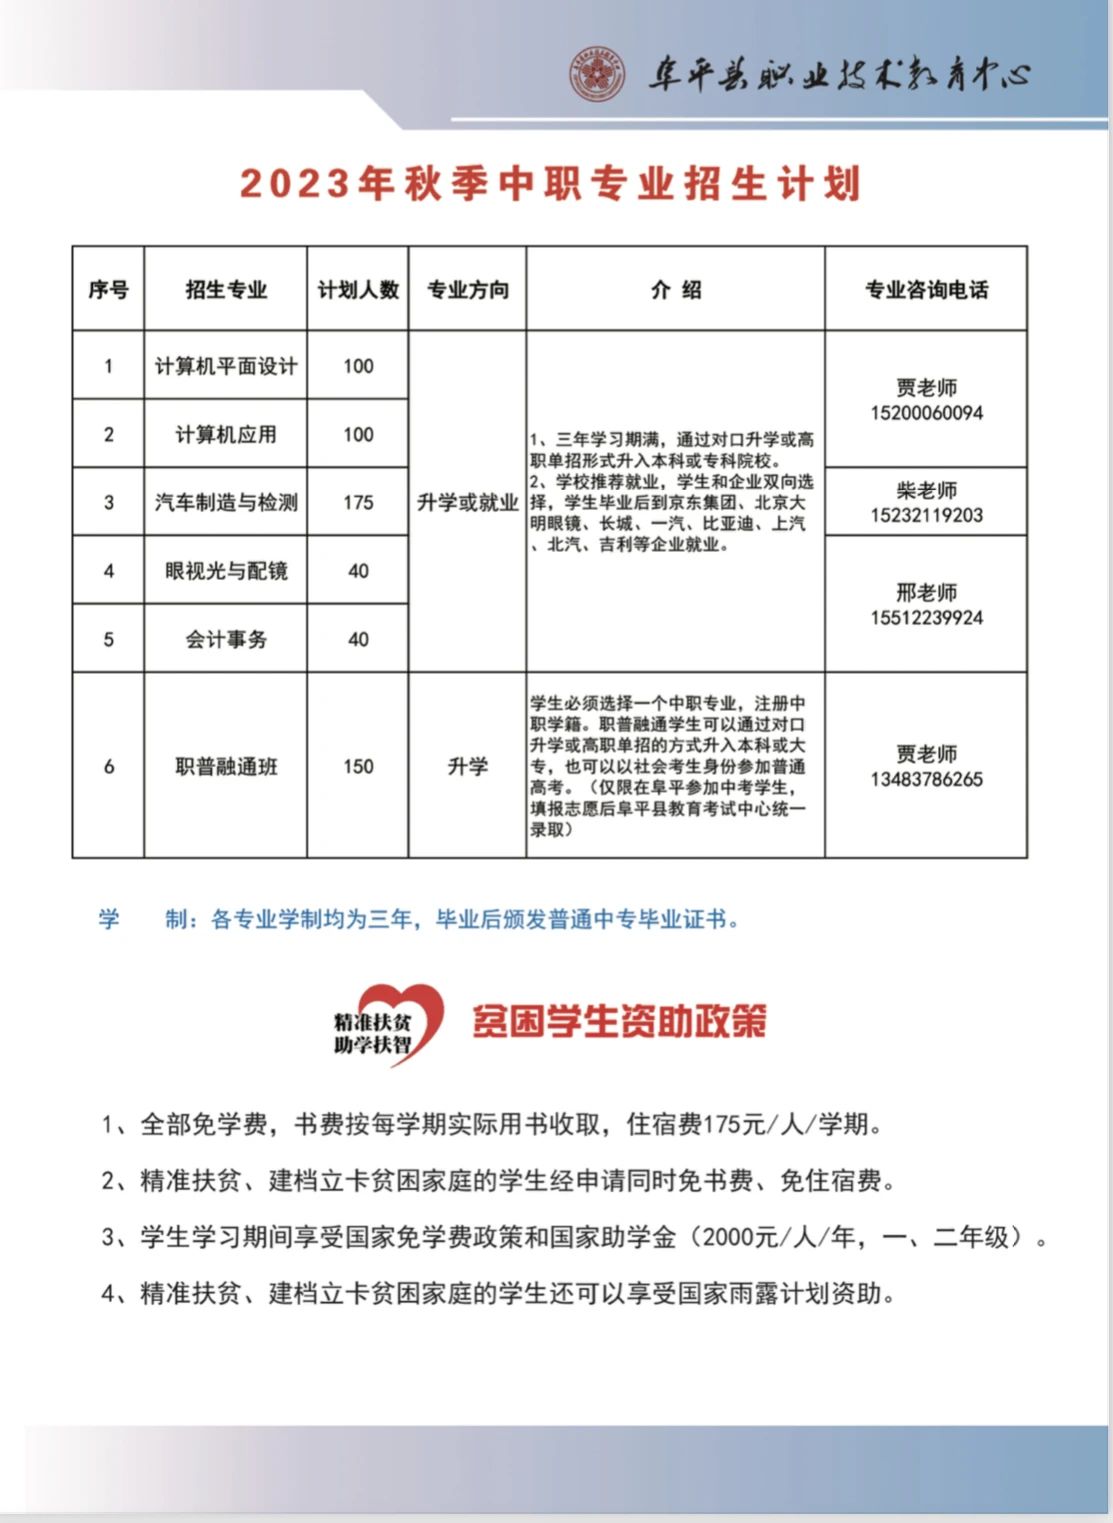 阜平县职业技术教育中心中职专业招生计划